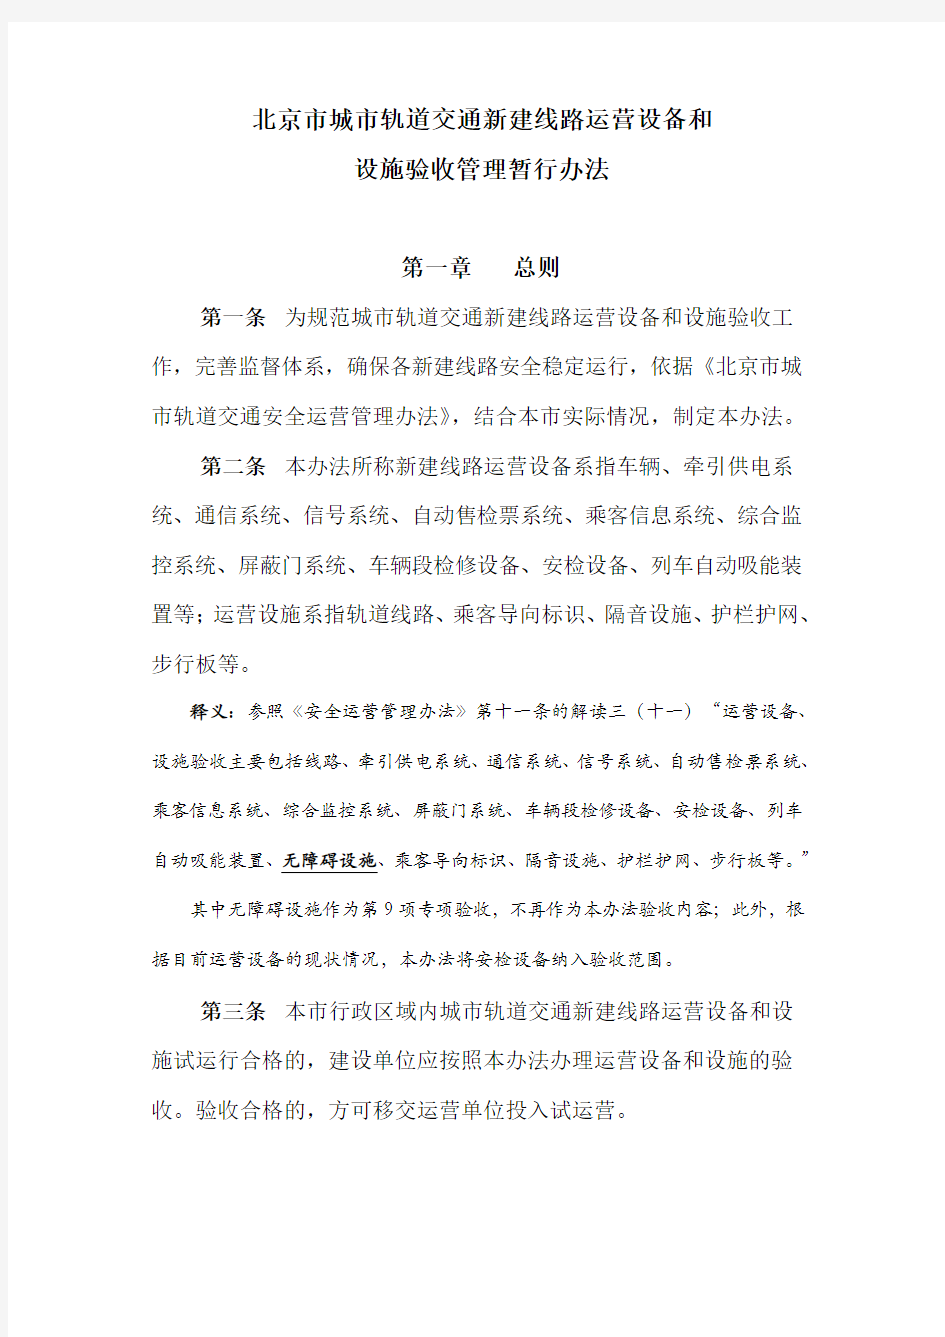 北京市城市轨道交通新线运营设备和设施验收暂行办法